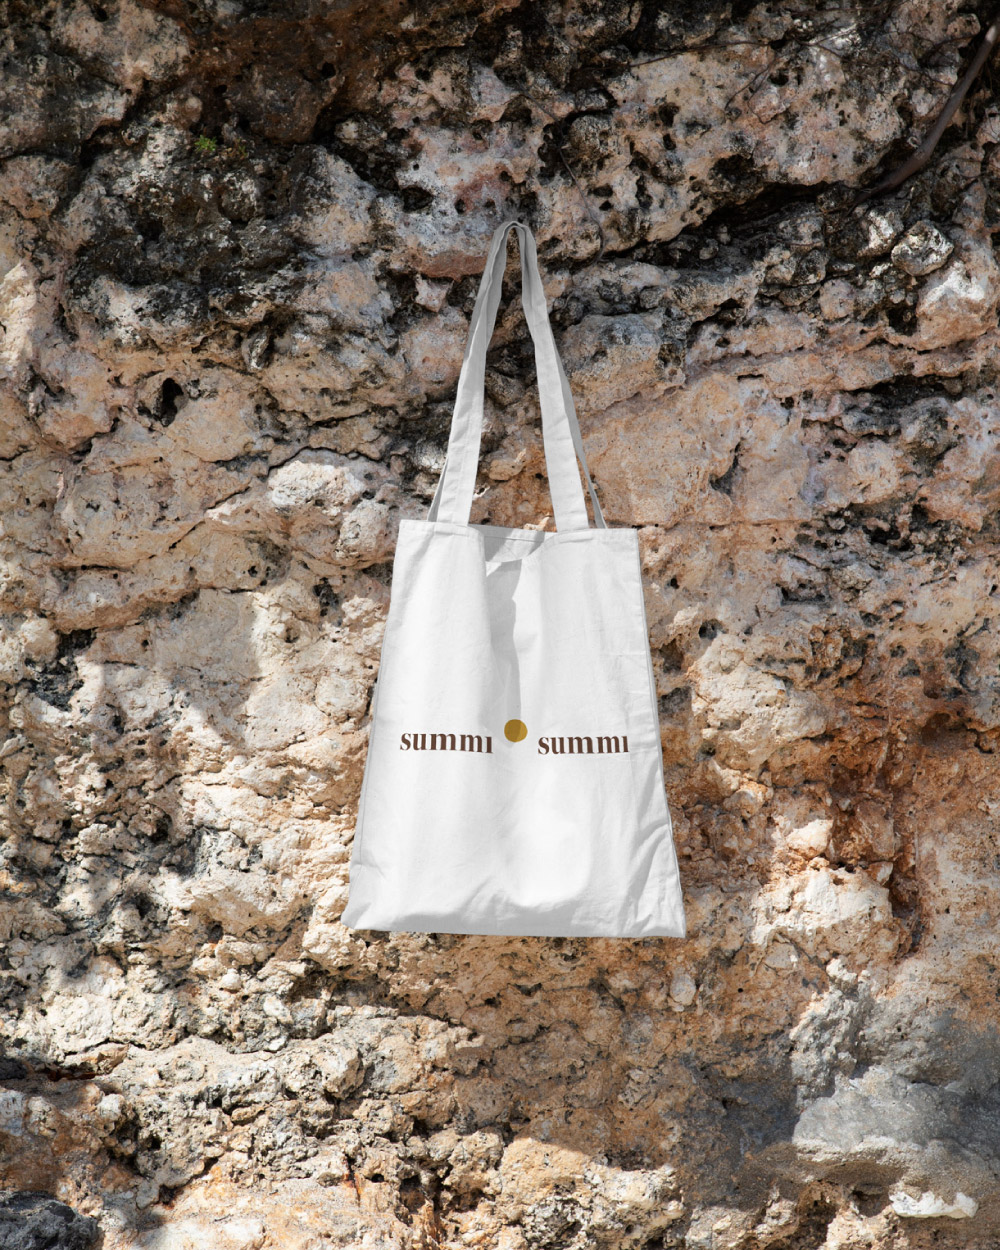 Natural Tote Bag with Summi Summi logo